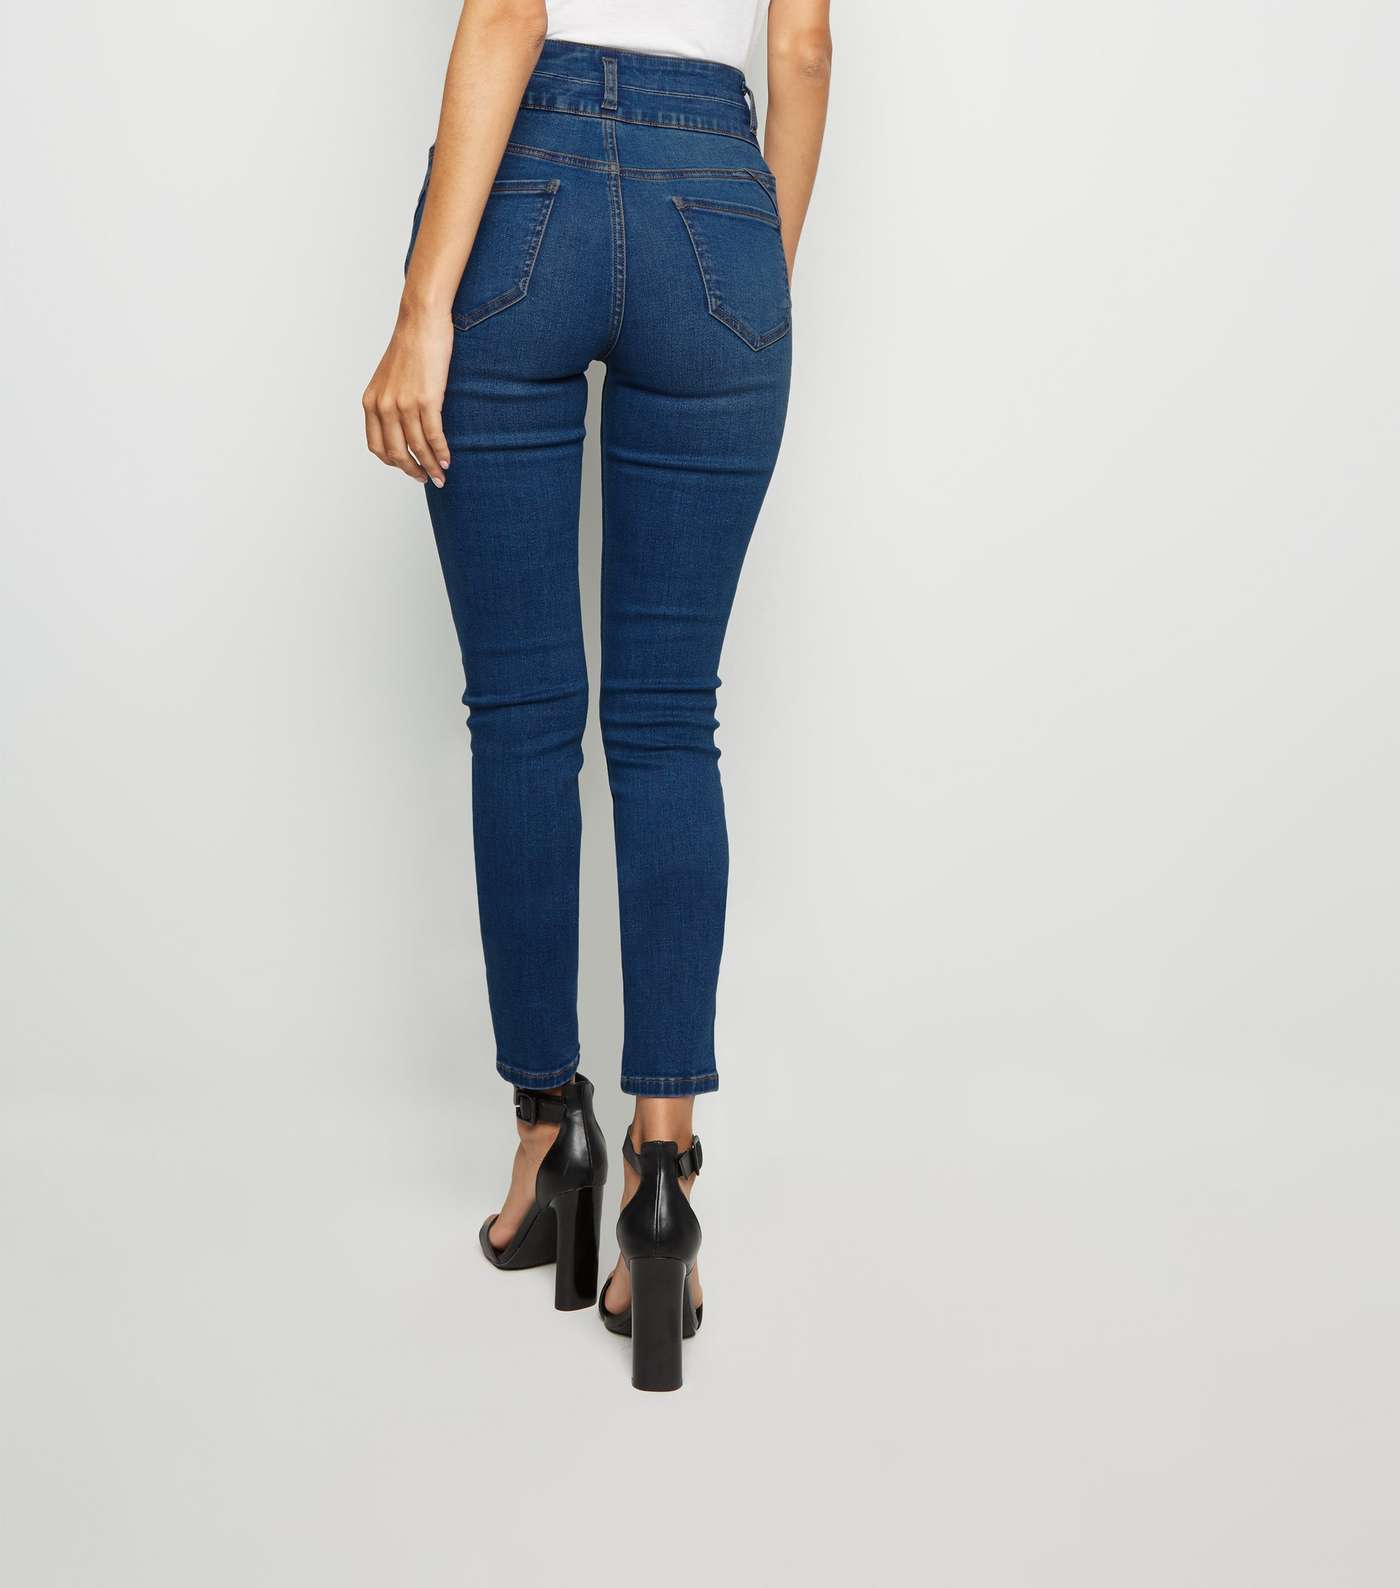 Blue High Waist 'Lift & Shape' Skinny Jeans Image 3